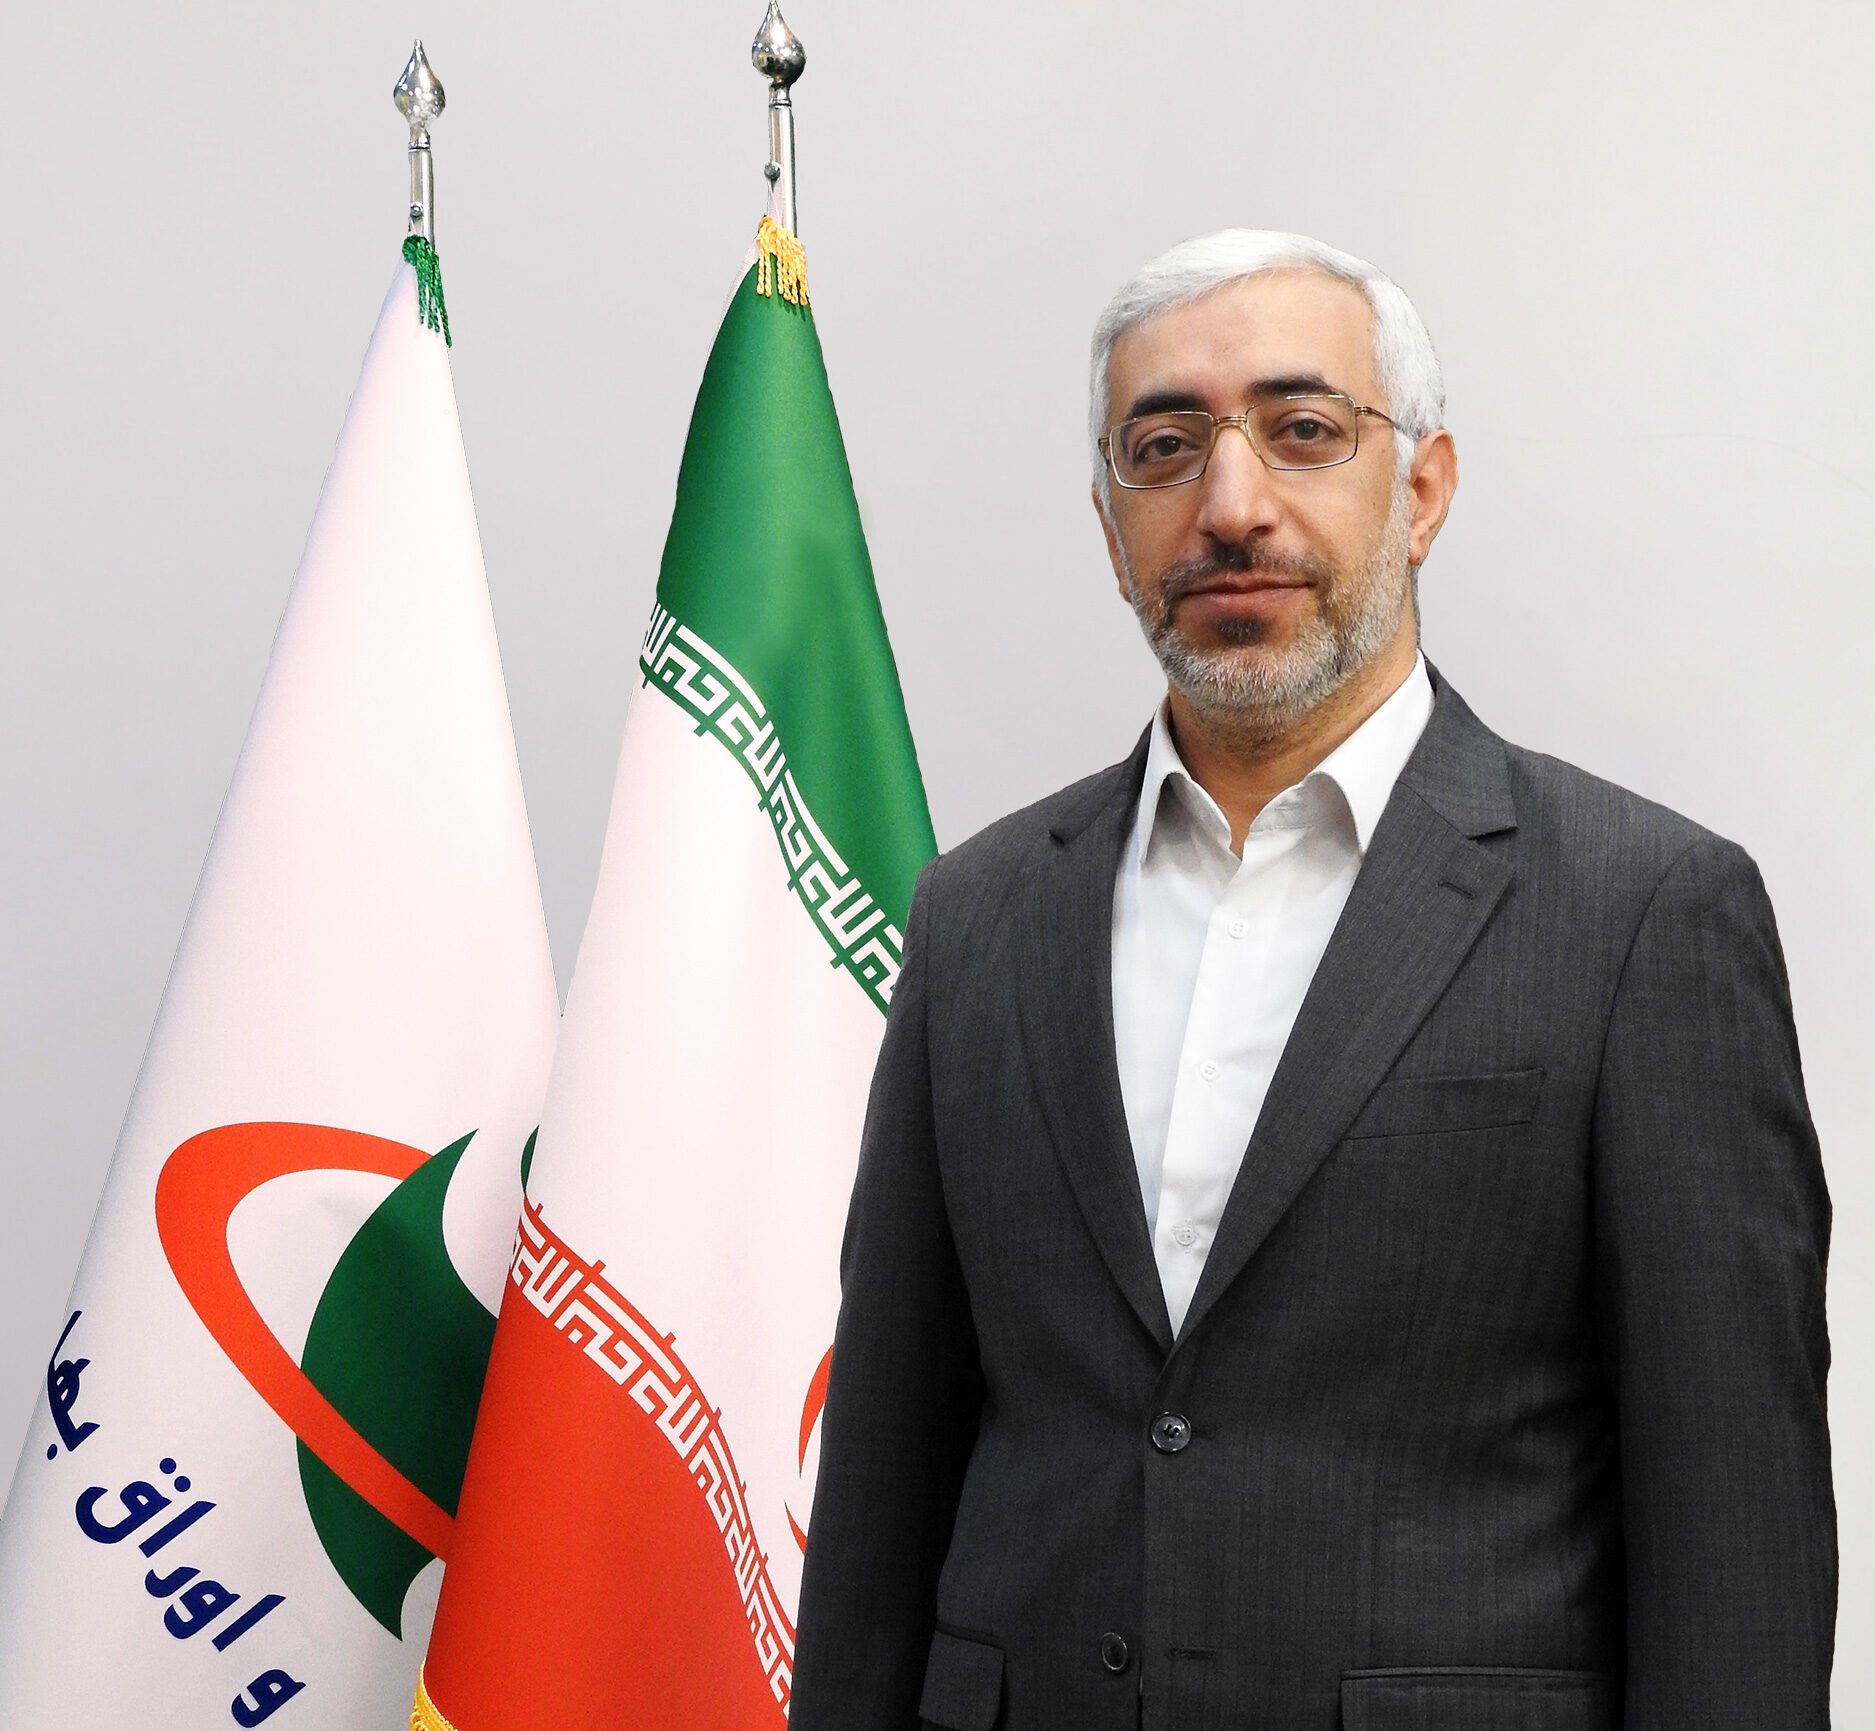 حضور 50 میلیون ایرانی در بازار سرمایه/ وعده مهم رئیس سازمان بورس درباره سامانه کدال